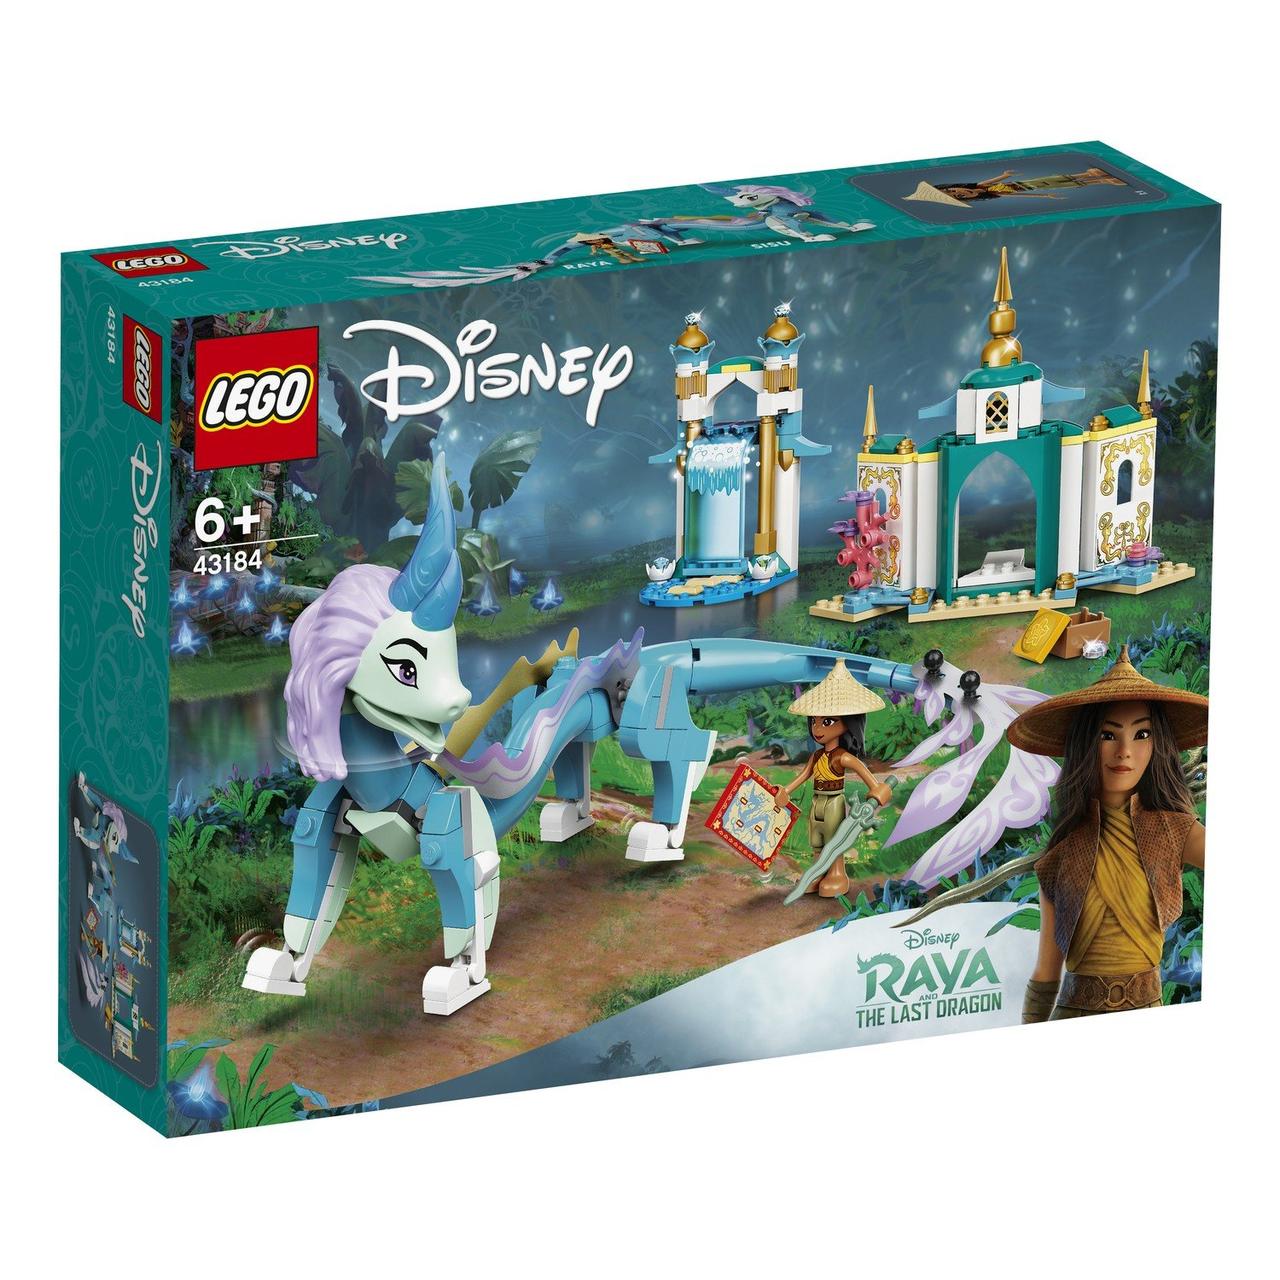 43184 Lego Disney Princess Райя и дракон Сису, Лего Принцессы Дисней